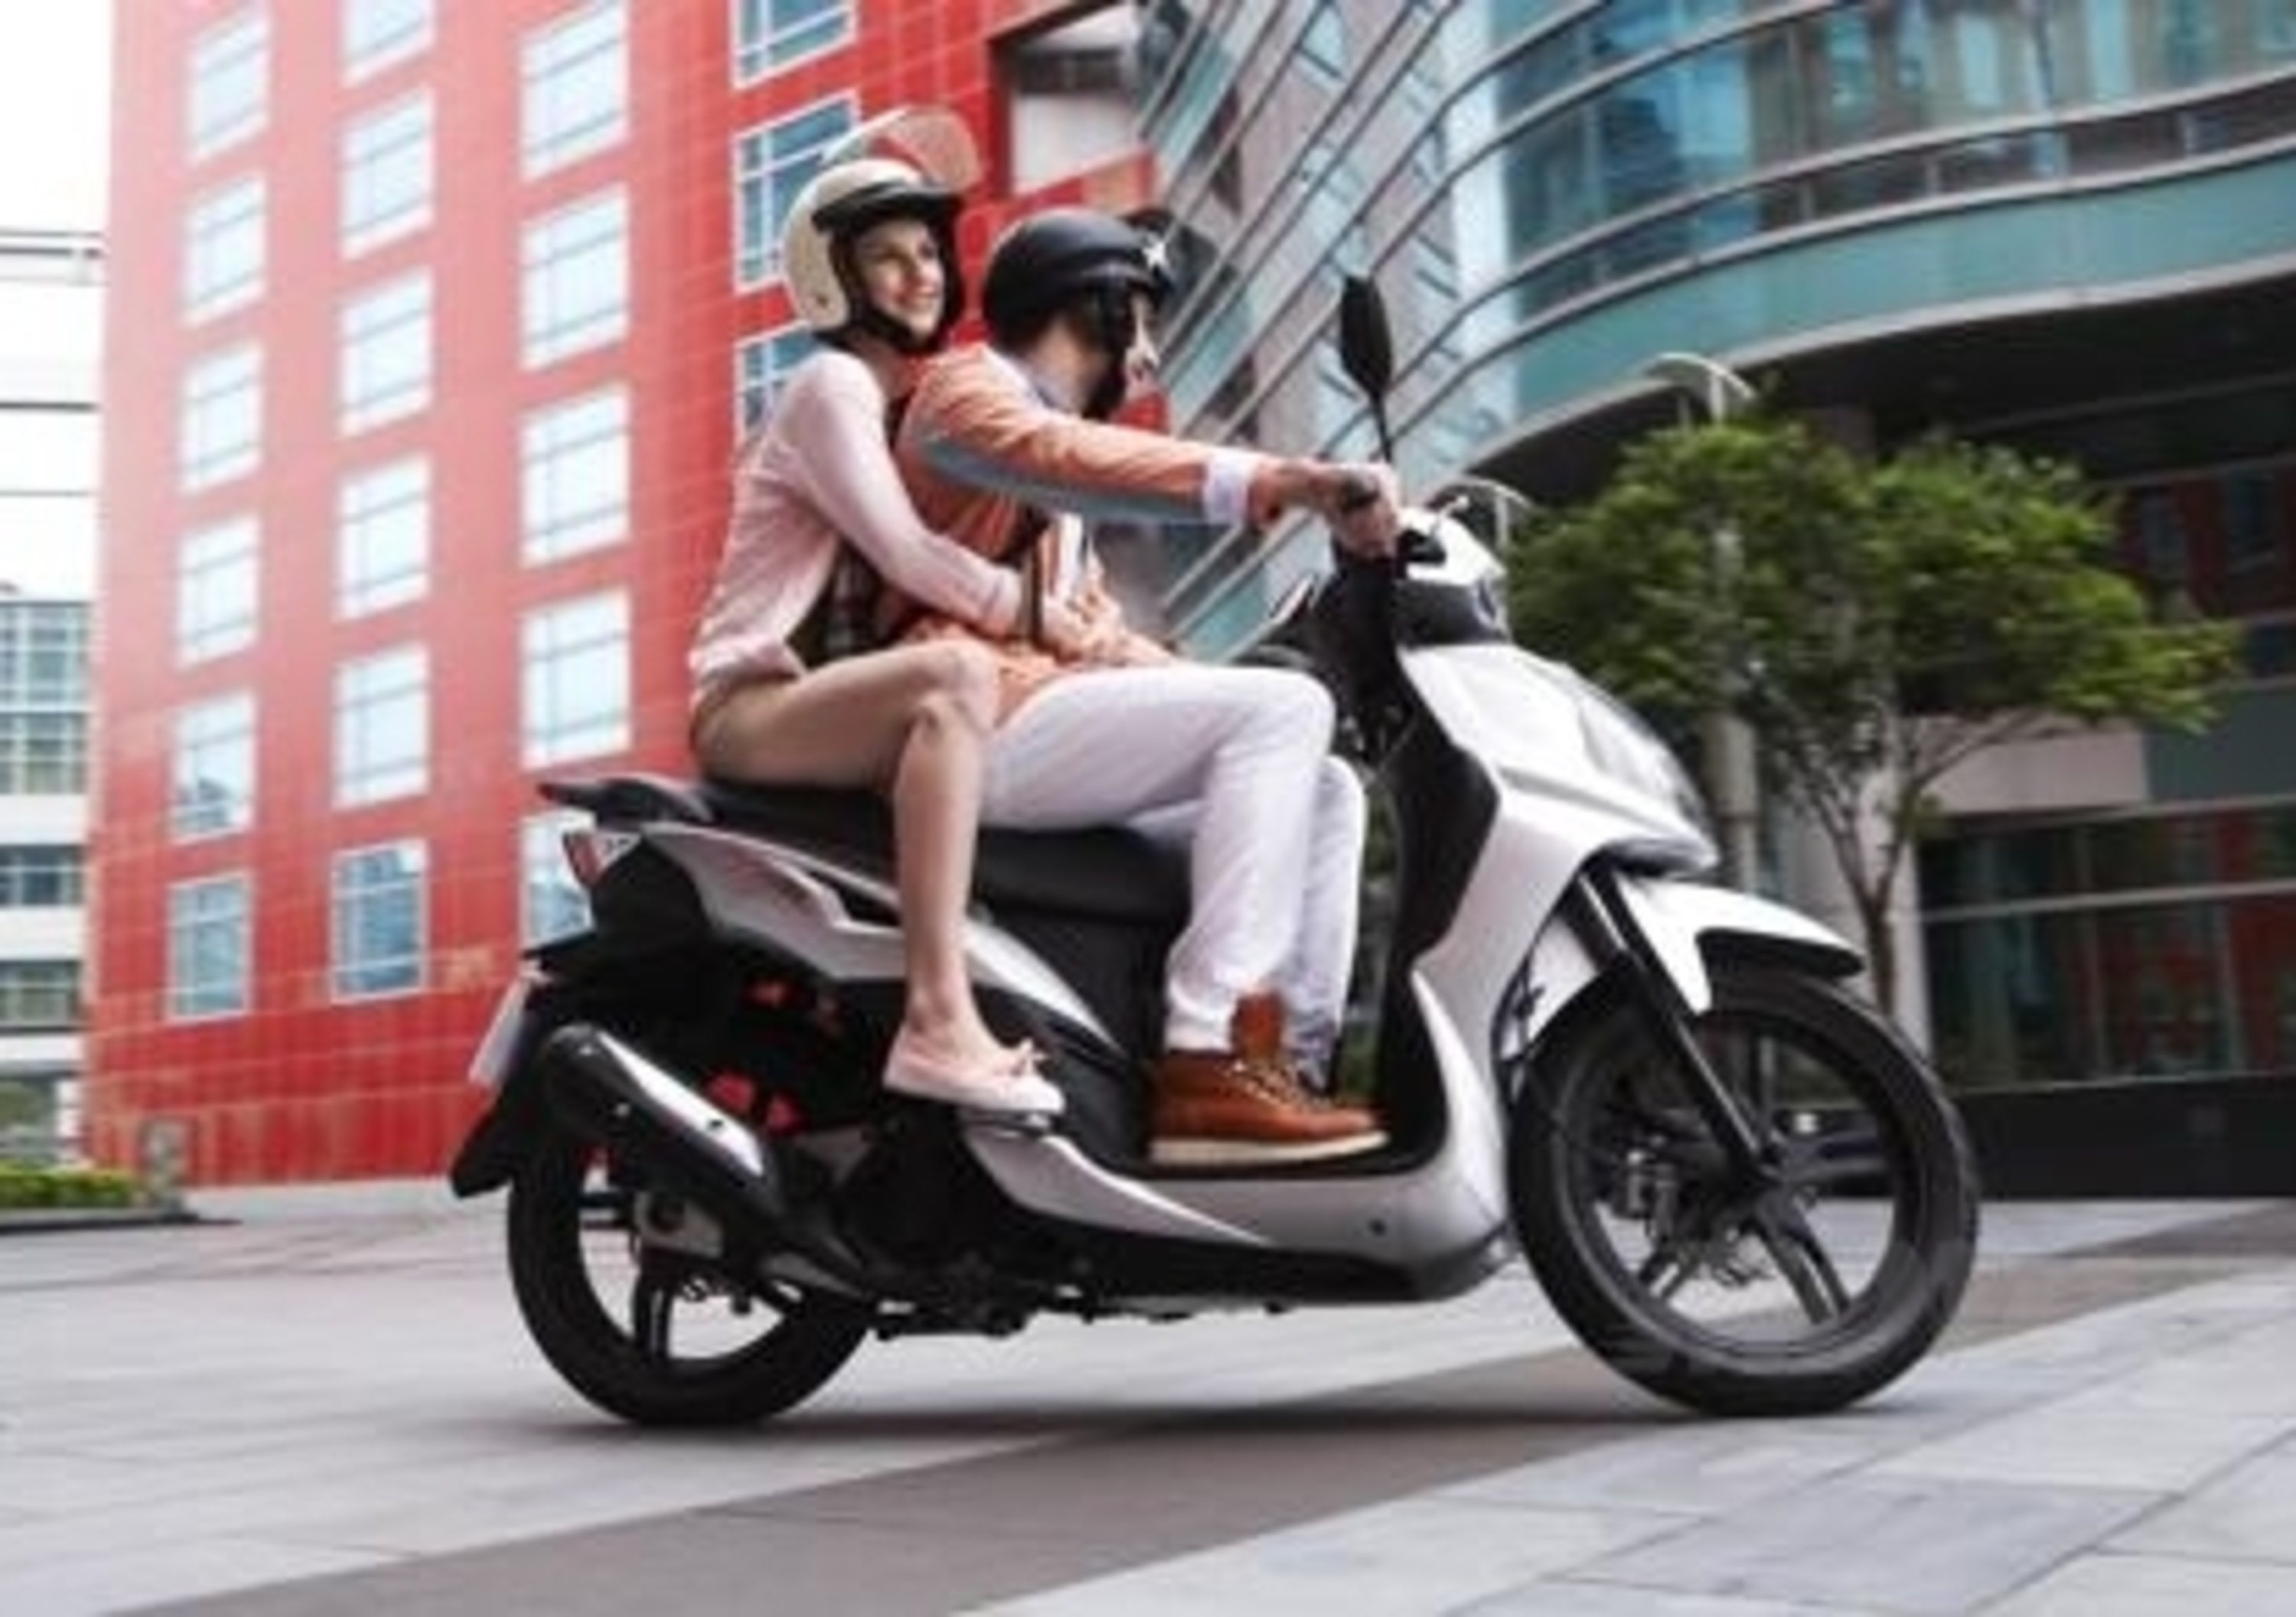 Sym offre 4 anni di garanza e assistenza stradale sugli scooter